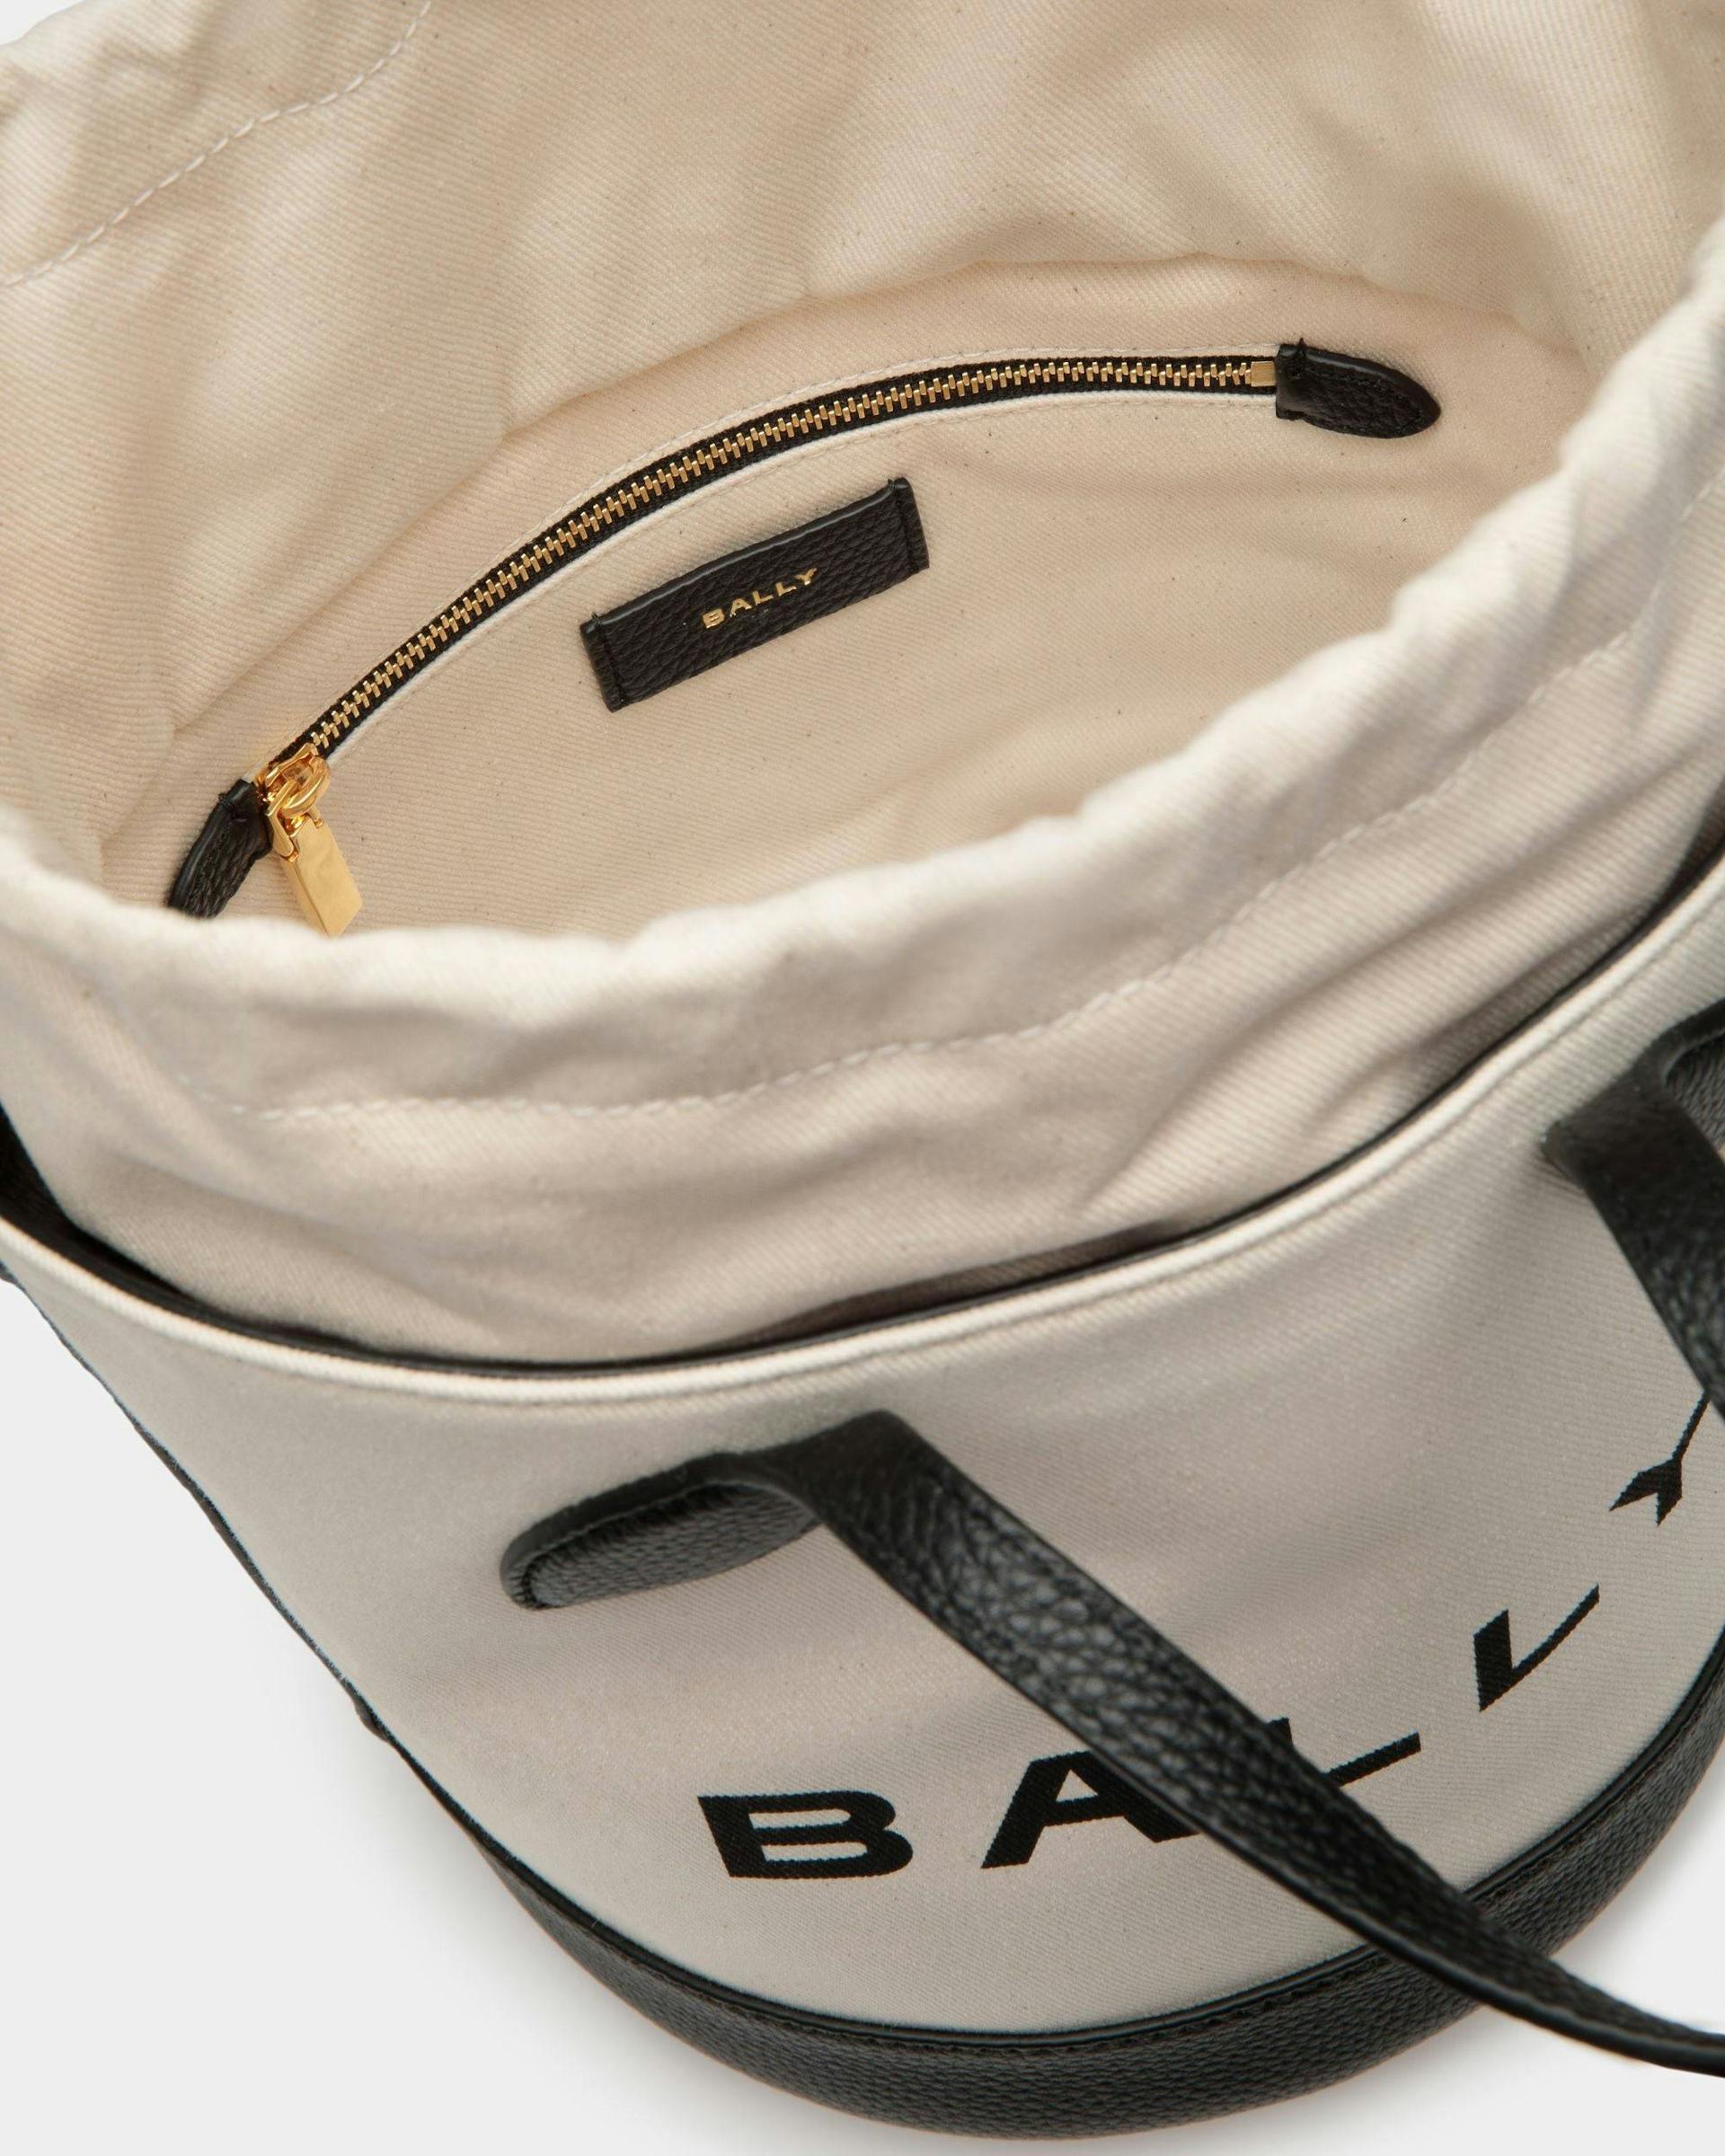 Bar バケットバッグ ナチュラル＆ブラック ファブリック - 女性 - Bally - 05